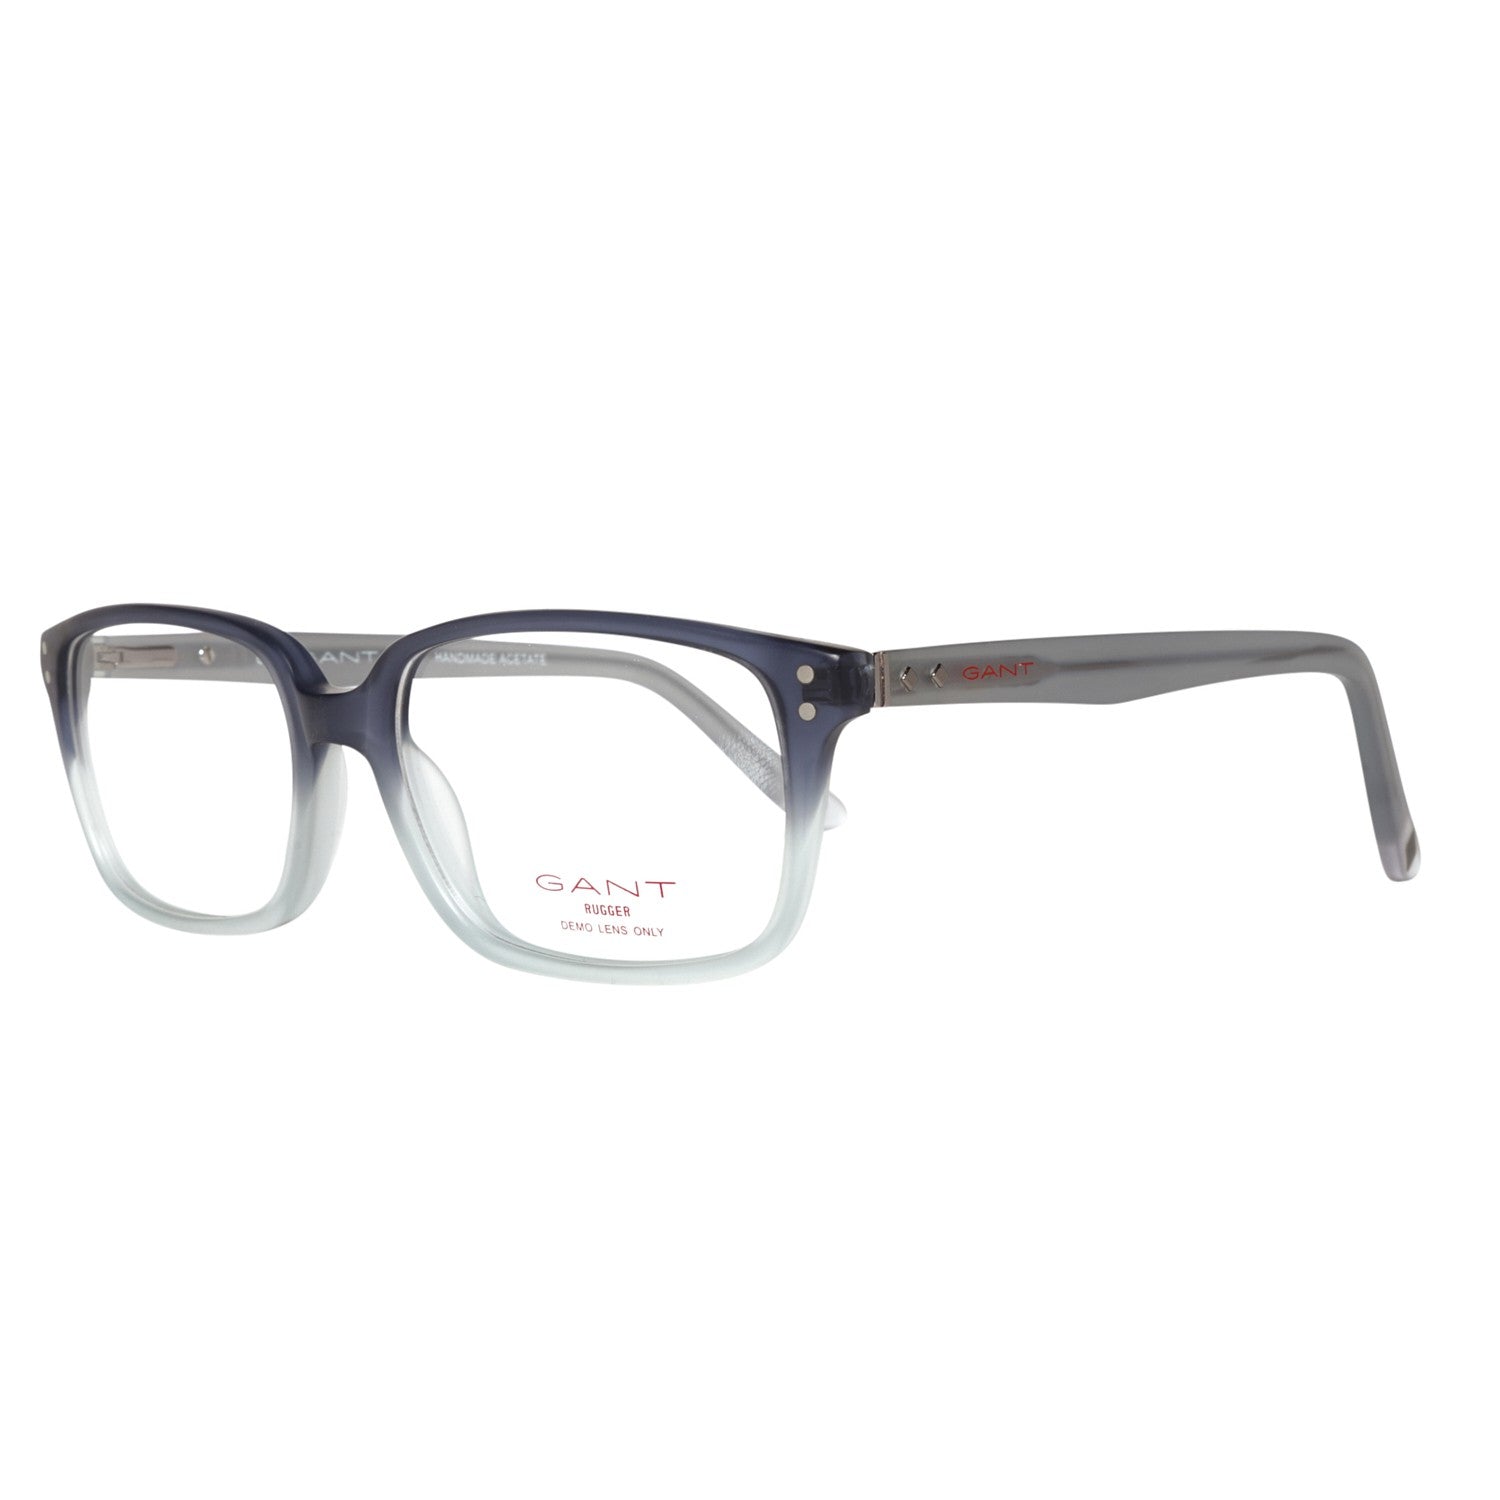 Gant Frames Gant Glasses Frames GRA105 L77 53 | GR 5009 MNV 53 Eyeglasses Eyewear UK USA Australia 